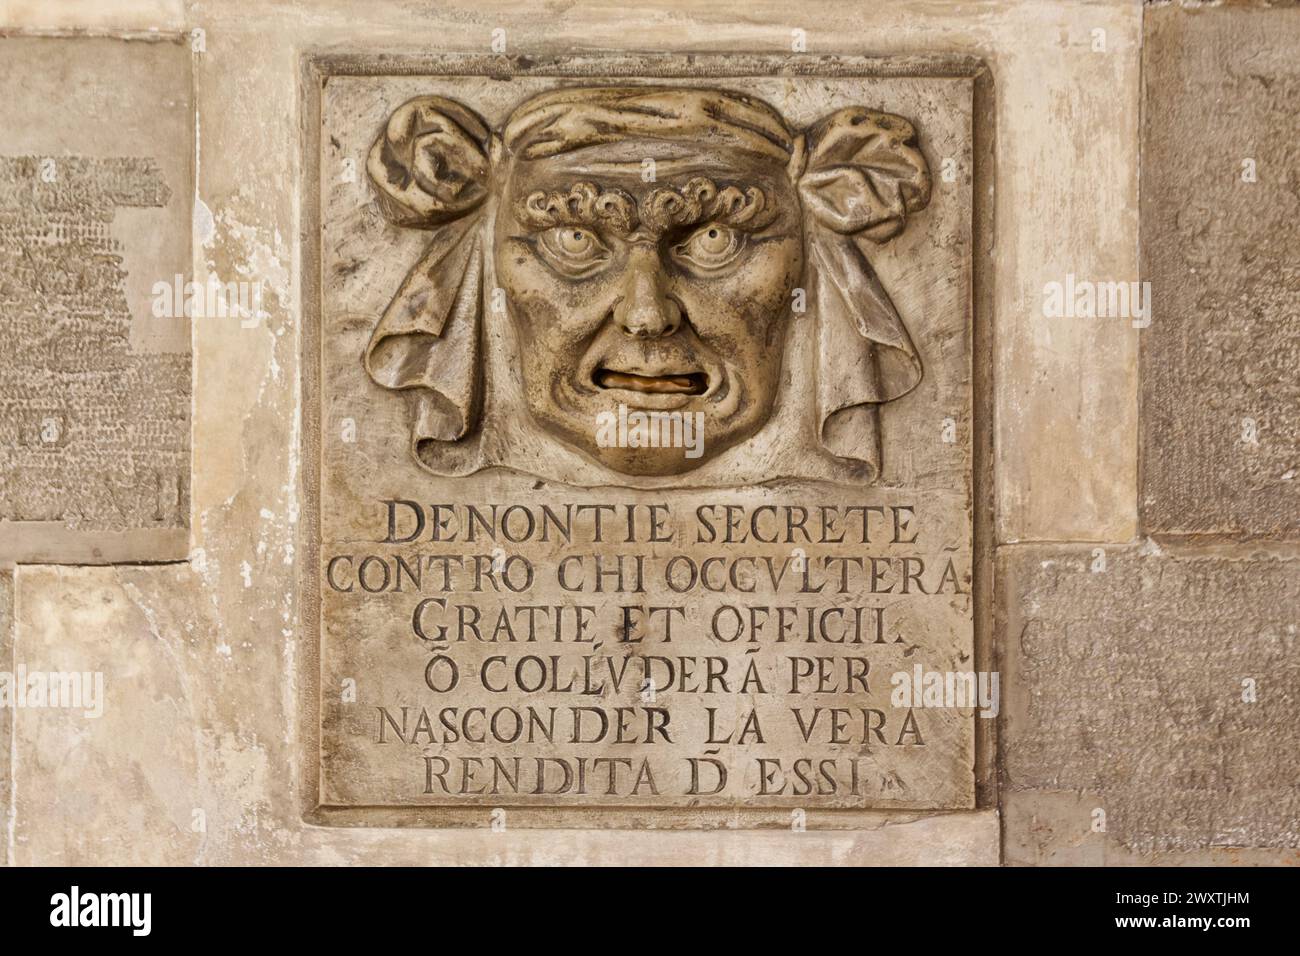 Bocca di Leone oder Löwenmündung im Dogenpalast in Venedig, Italien, für anonyme Beschwerden verwendet Stockfoto